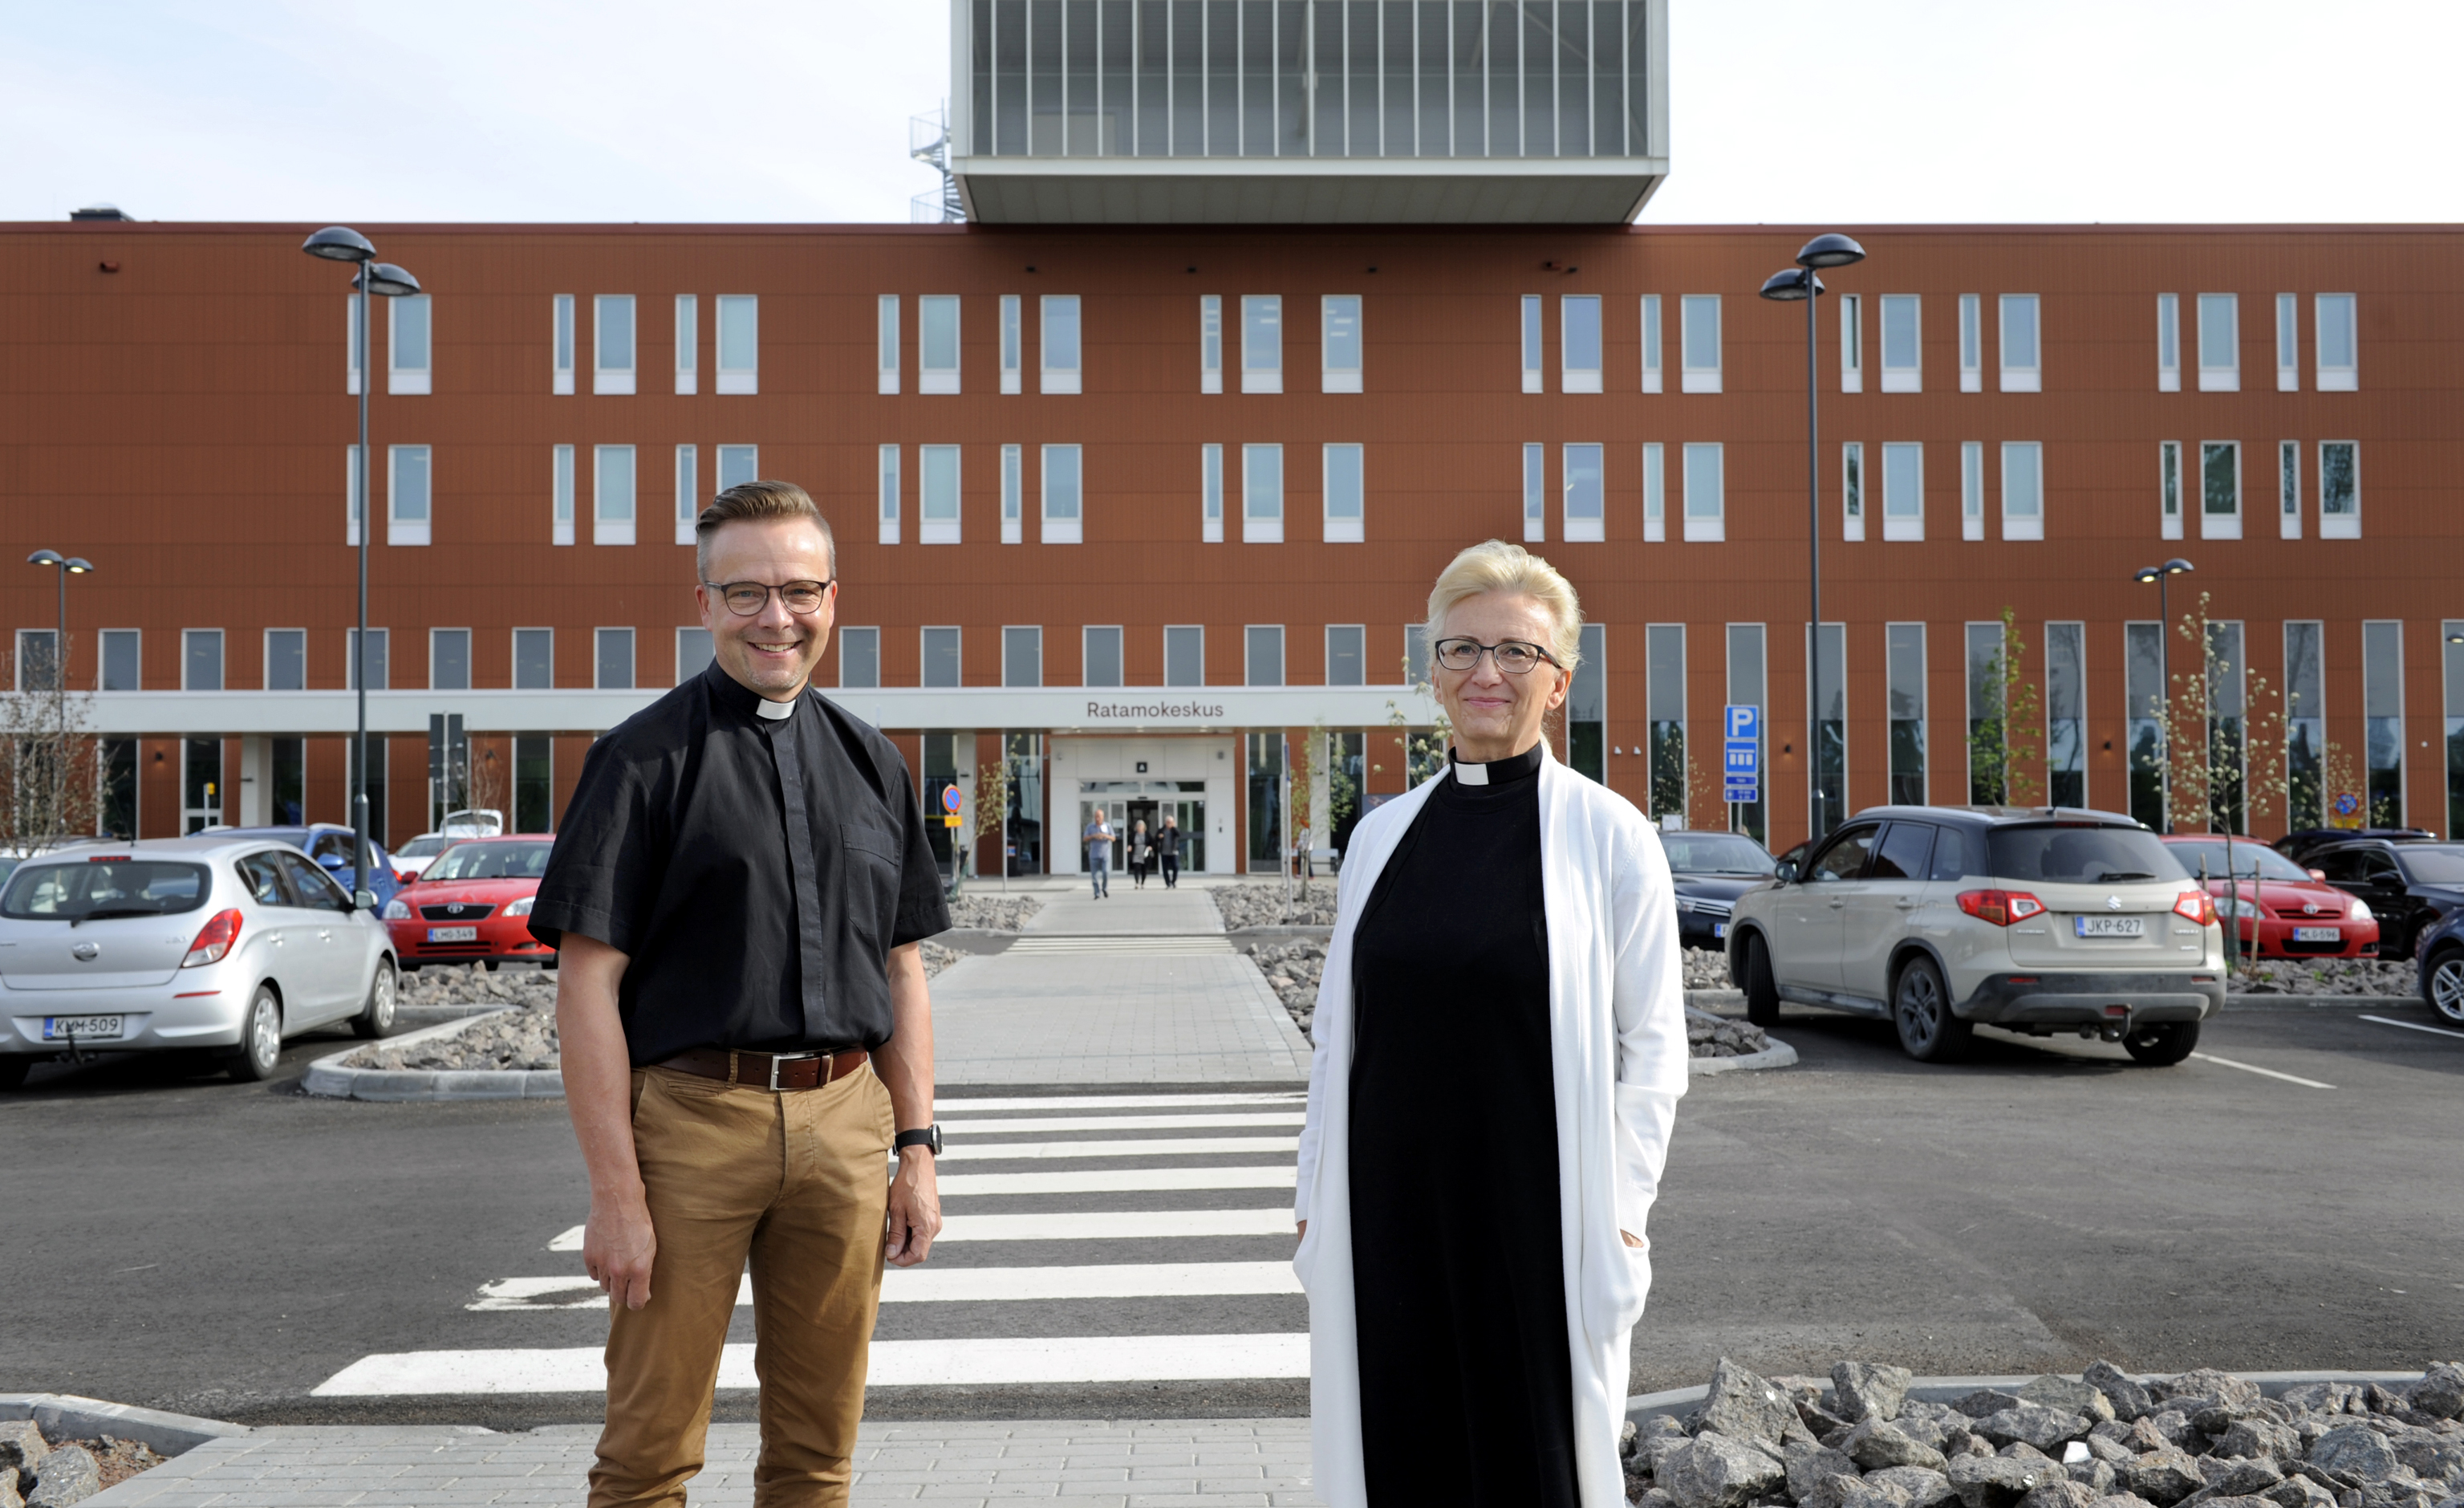 Sairaalpapit Kari Niemelä ja Tuula Ylikangas seisovat uuden Ratamokeskuksen edessä hymyillen kameralle.